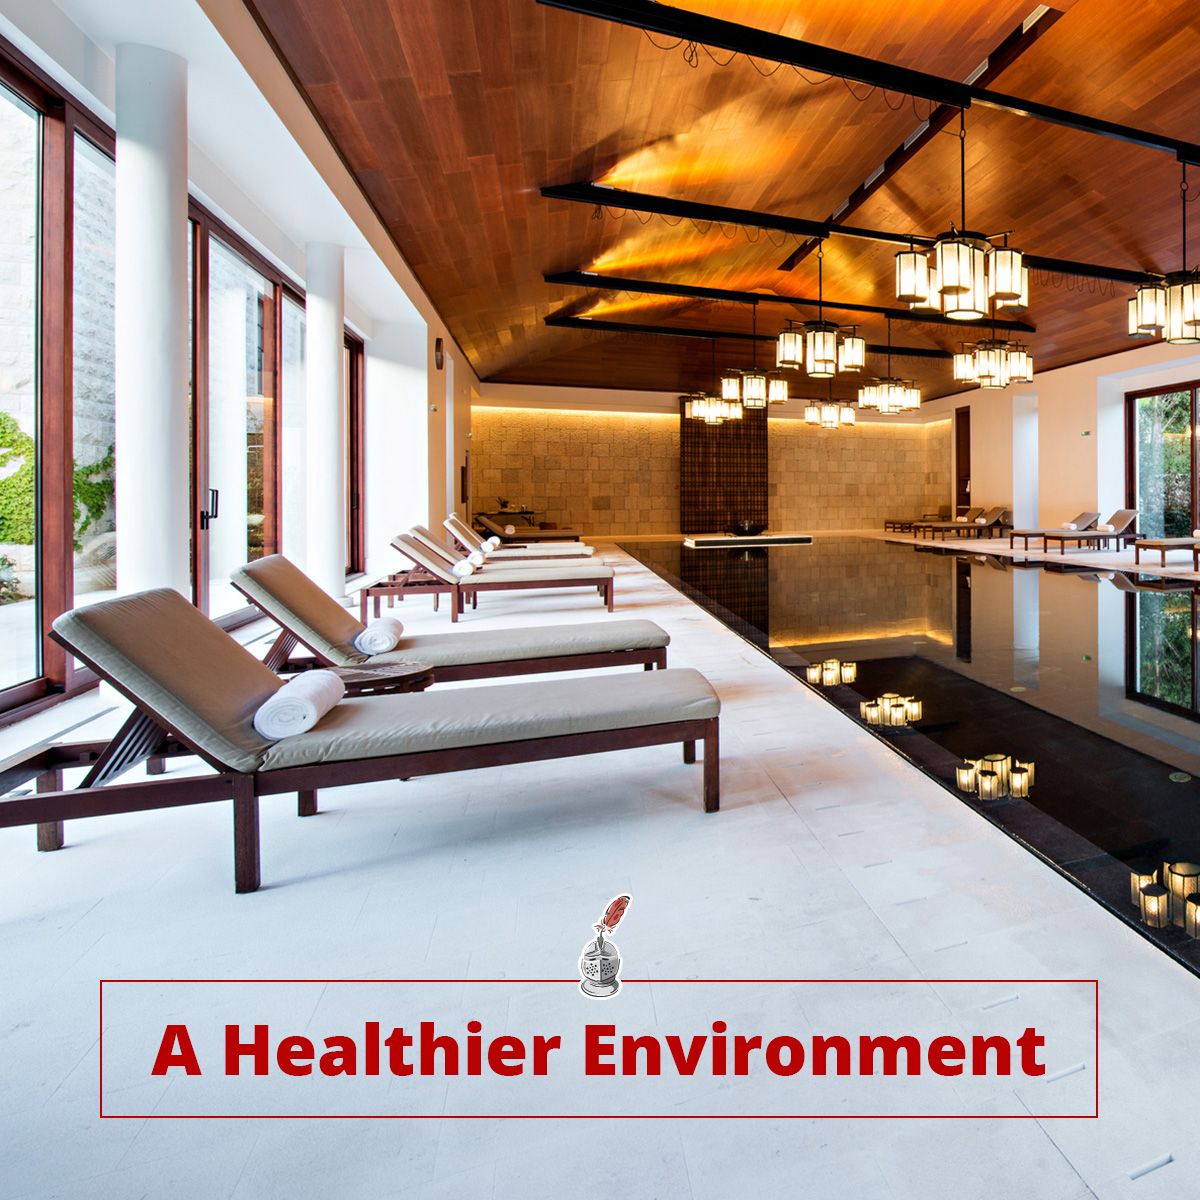 A Healthier Environment